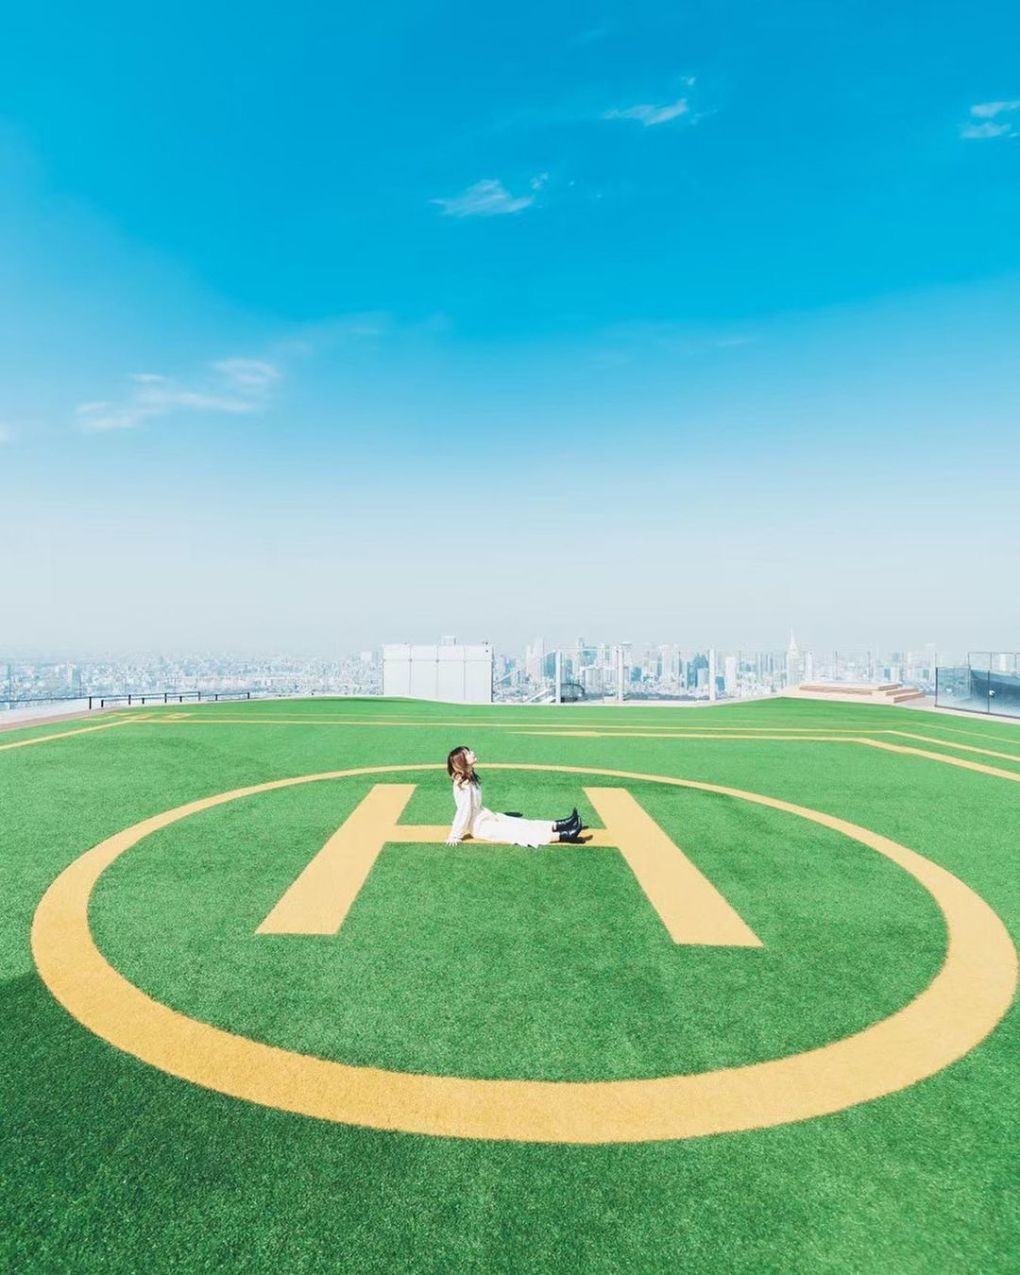 Khu vực sân đỗ trực thăng với phần thảm xanh mướt cũng là địa điểm chụp ảnh sống ảo được nhiều bạn trẻ ưa thích. Ảnh: Instagram kouyou jp